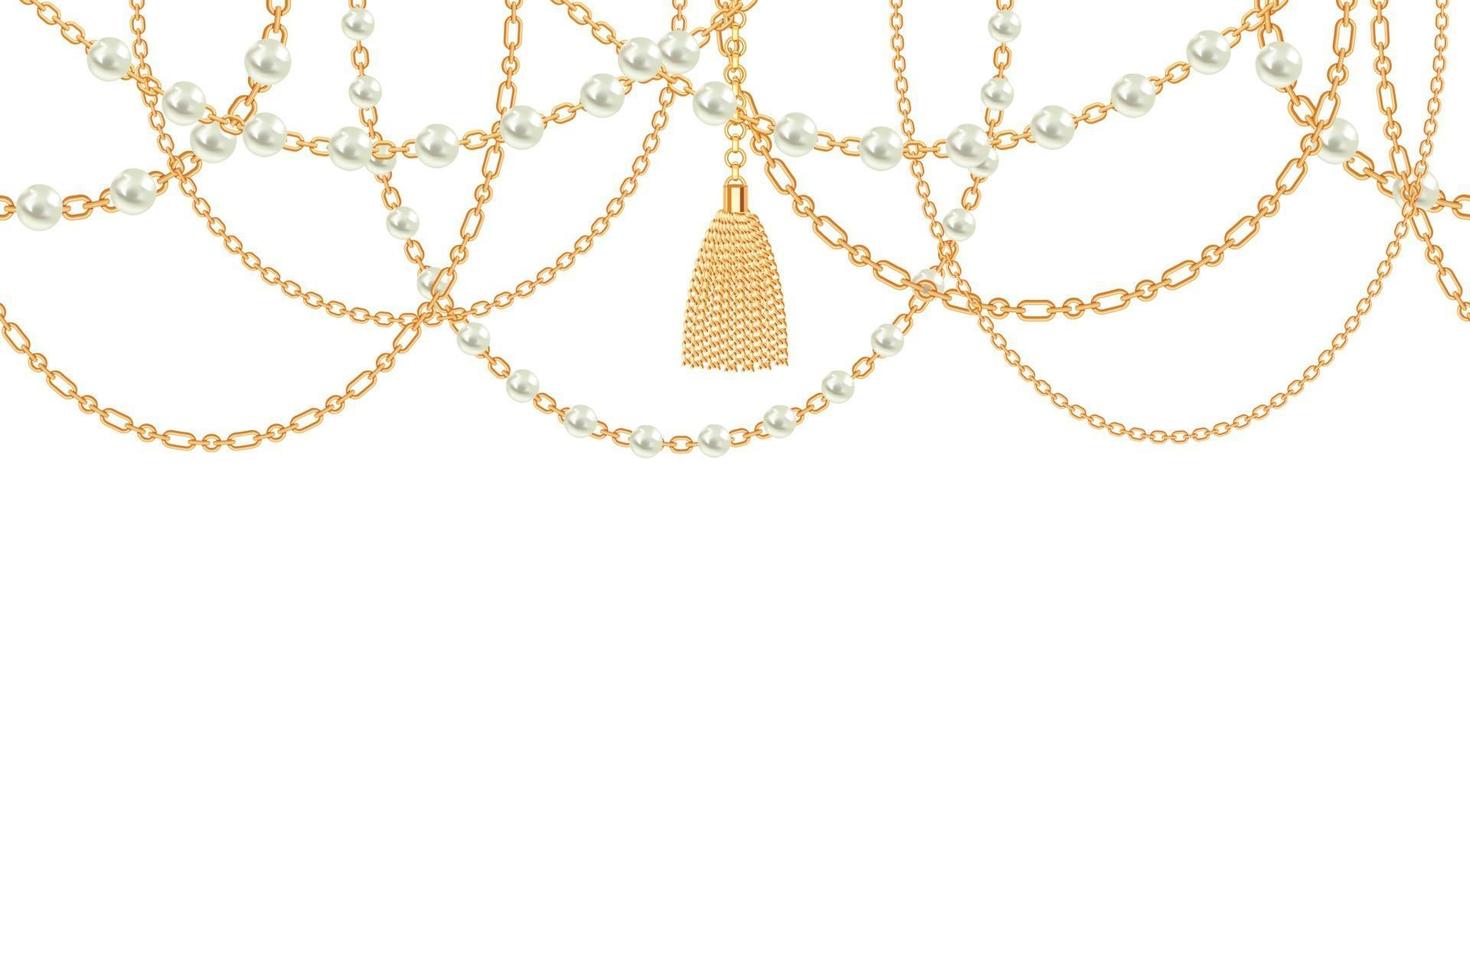 bakgrund med gyllene metallhalsband. tofs, pärlor och kedjor. på vitt. vektor illustration